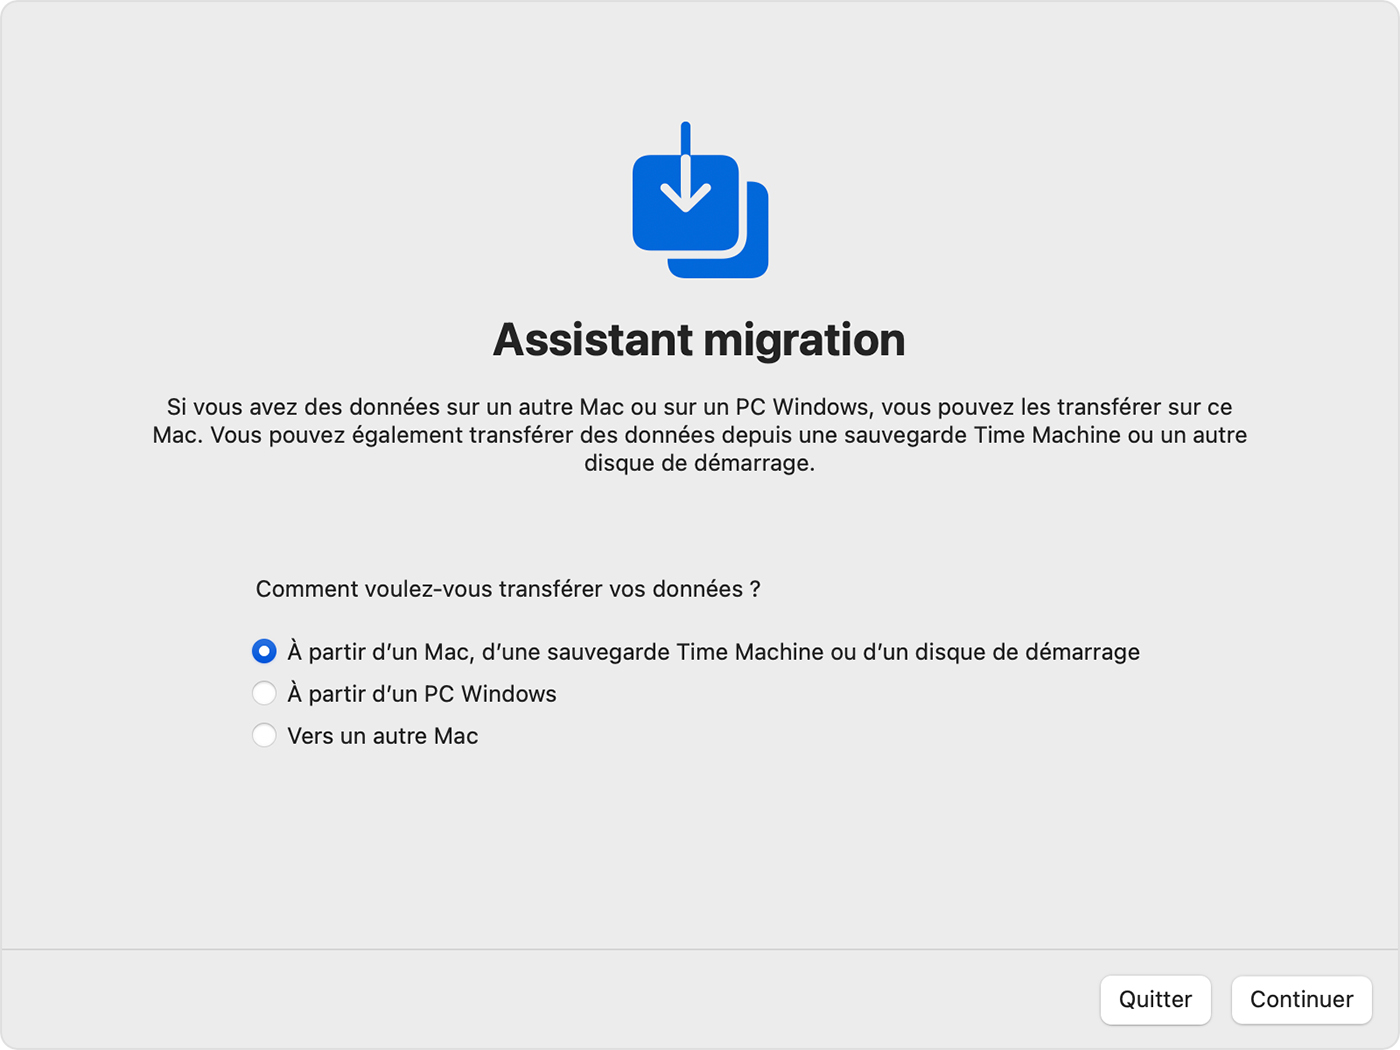 Assistant migration : comment souhaitez-vous transférer vos données ?